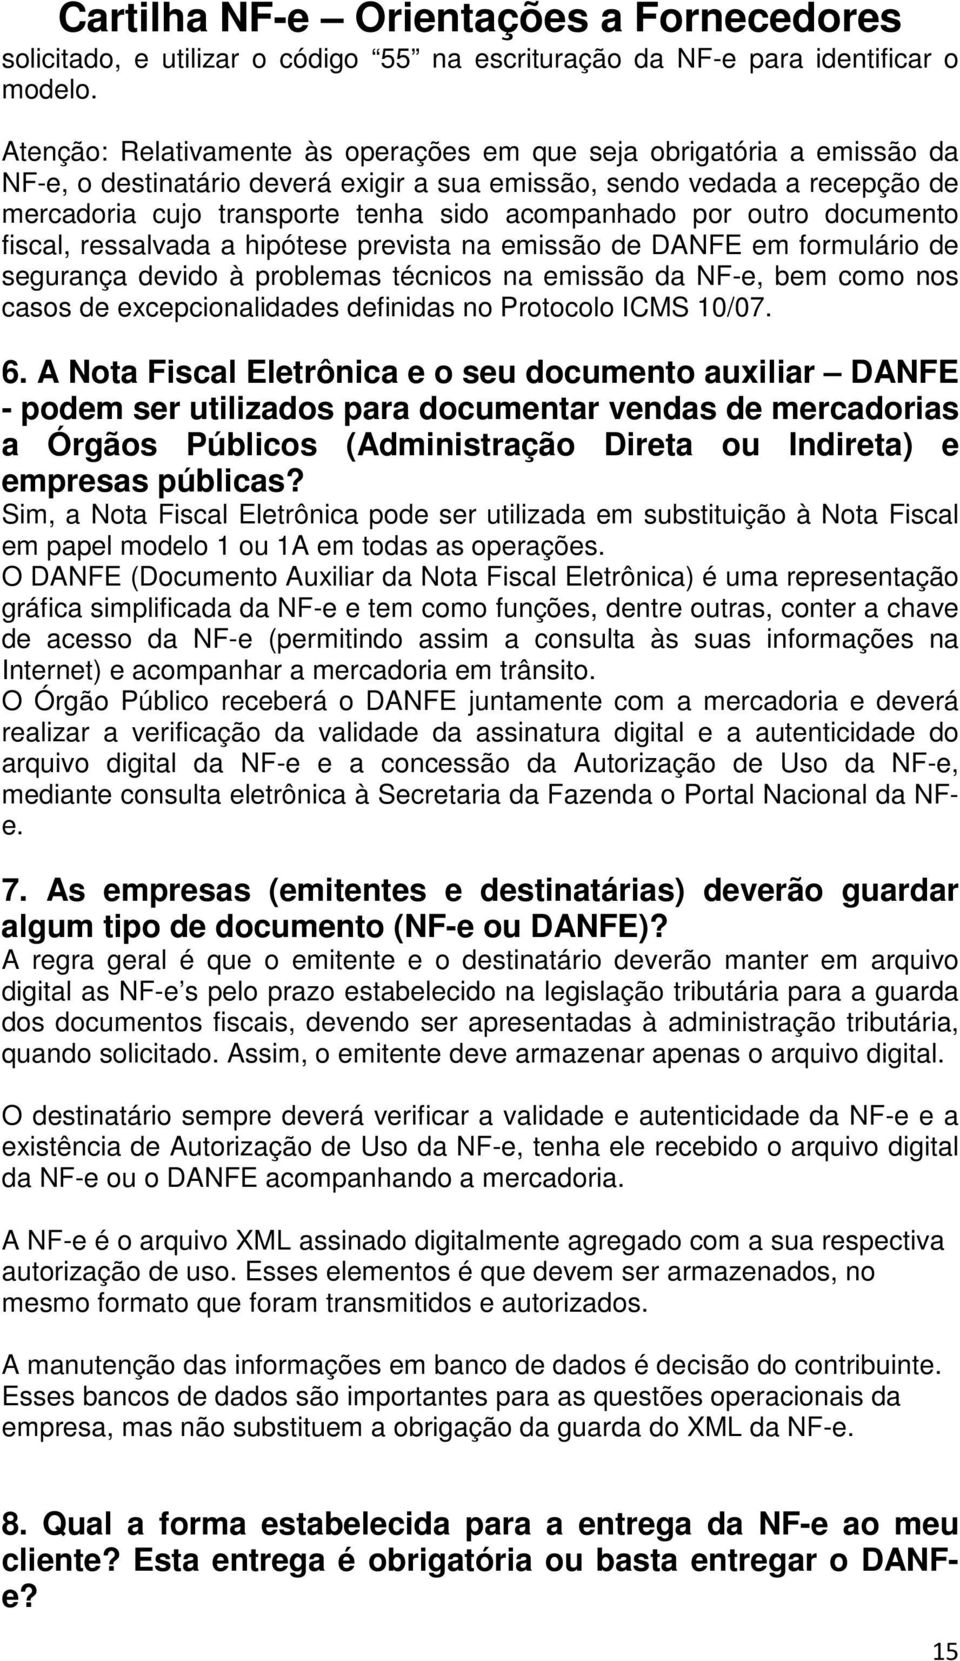 por outro documento fiscal, ressalvada a hipótese prevista na emissão de DANFE em formulário de segurança devido à problemas técnicos na emissão da NF-e, bem como nos casos de excepcionalidades